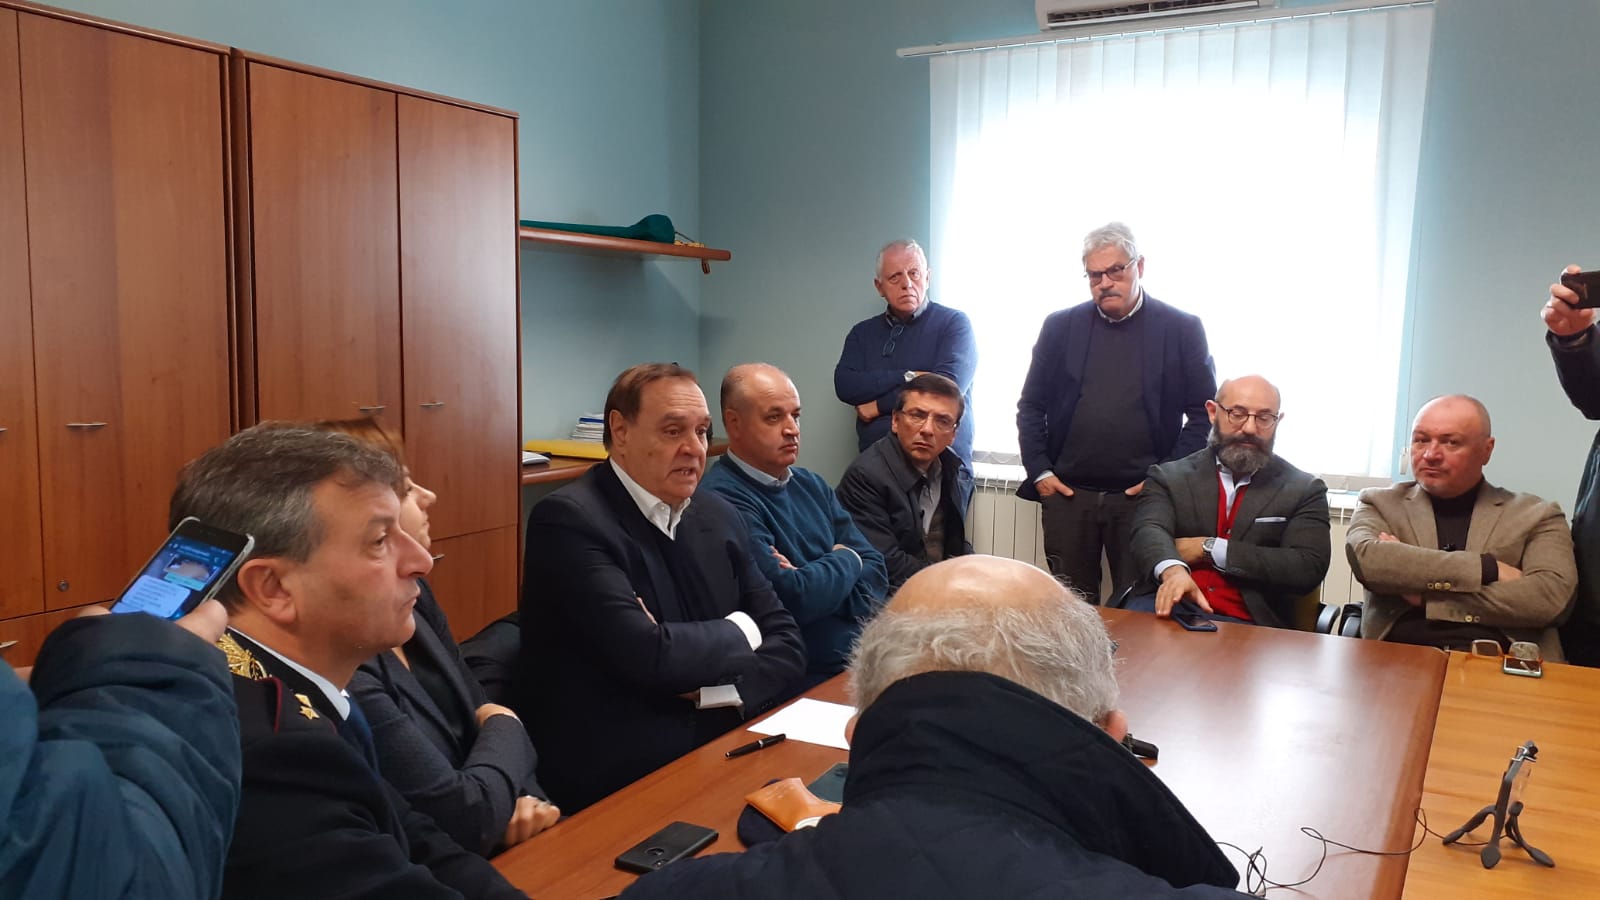 Benevento| Terremoto, Mastella: avviate le procedure di controllo degli edifici. Nuova riunione stasera alle 19